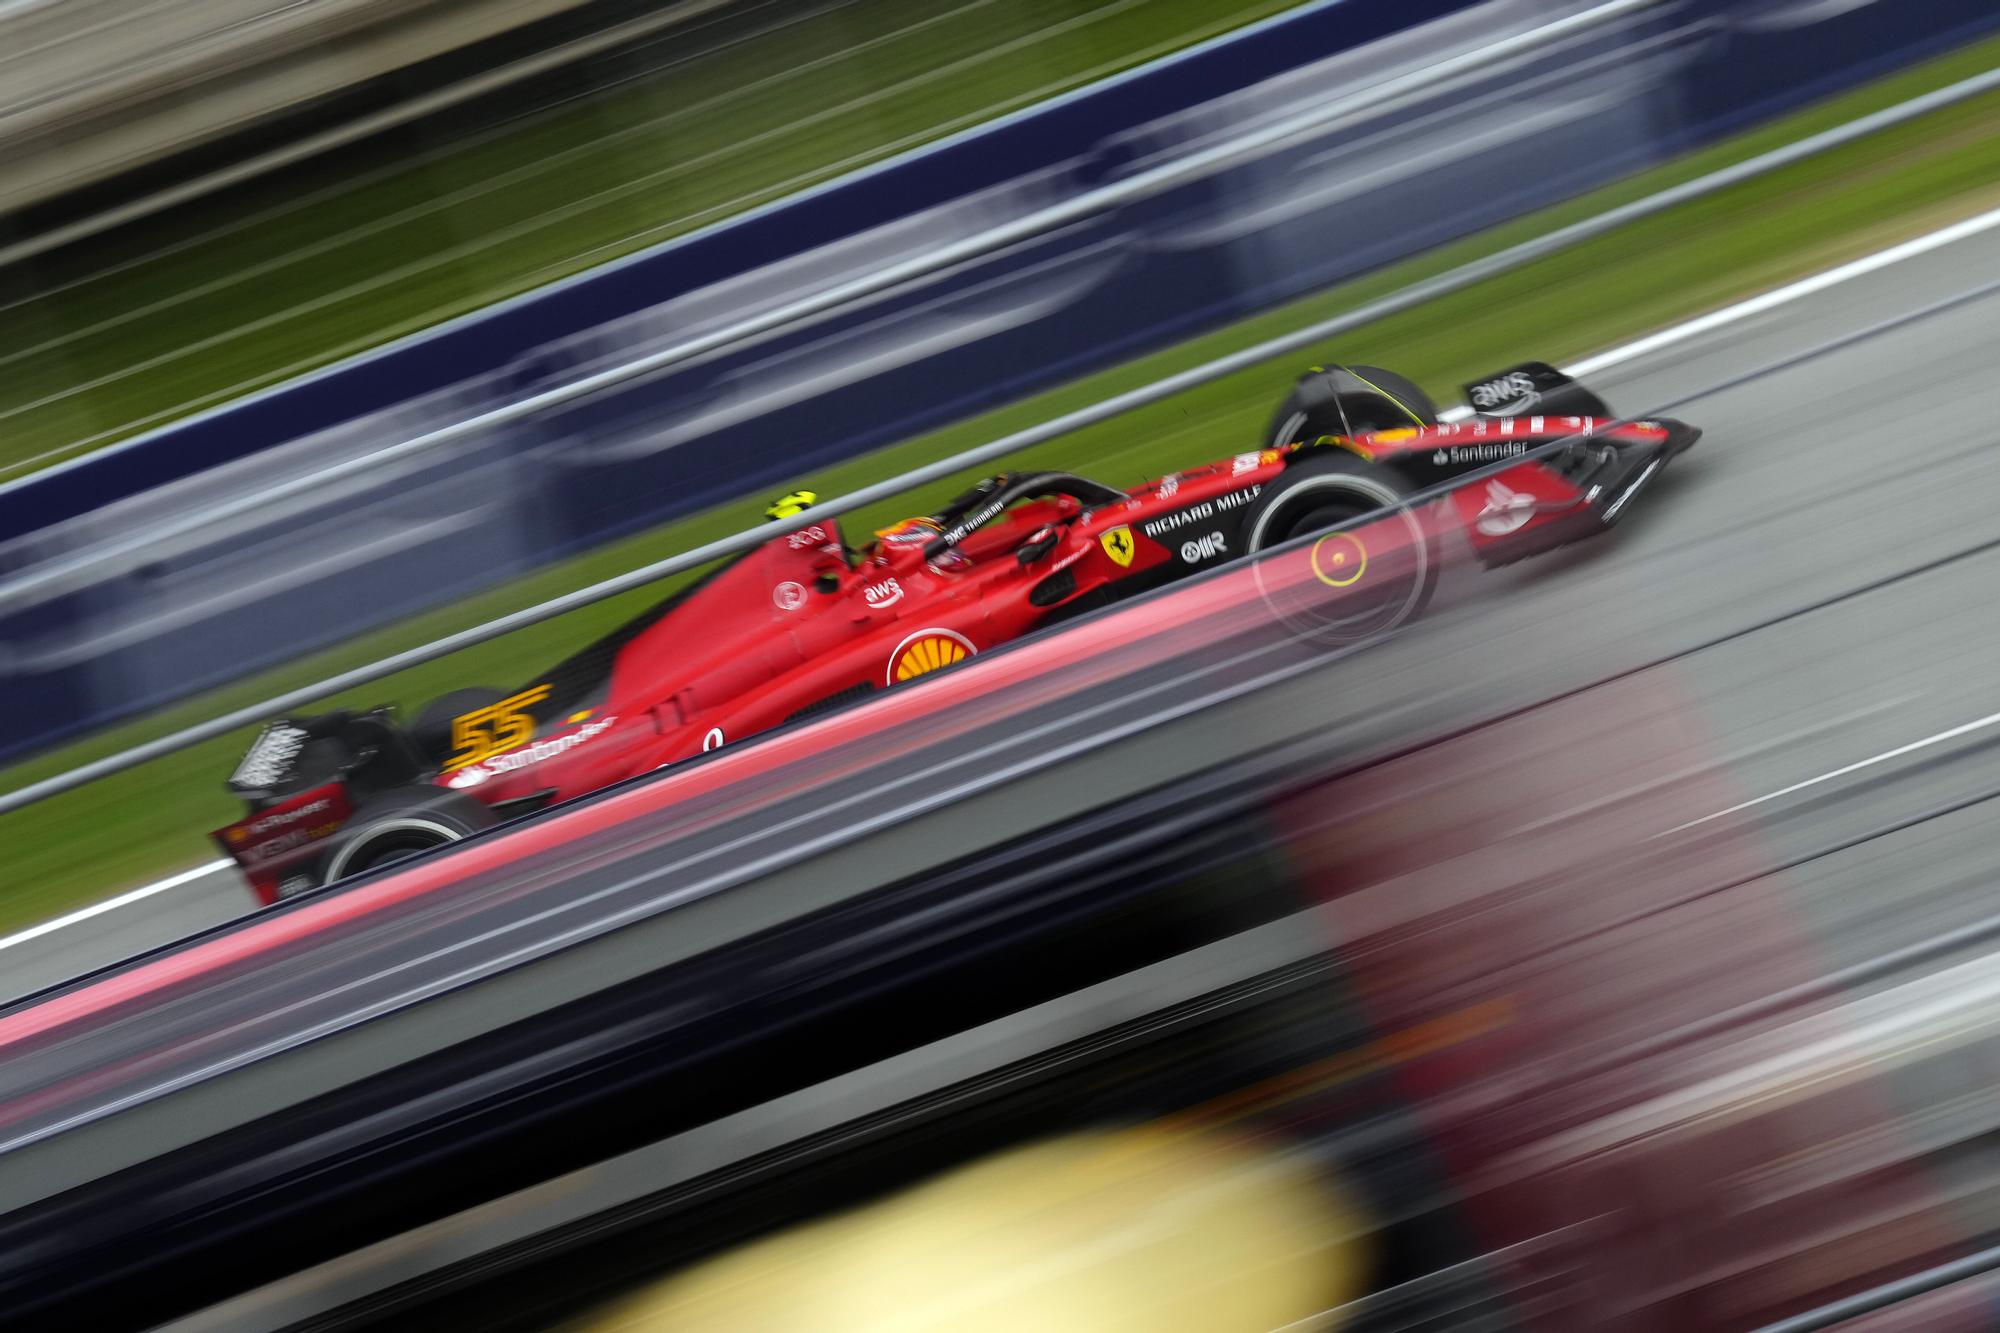 Spanish Grand Prix